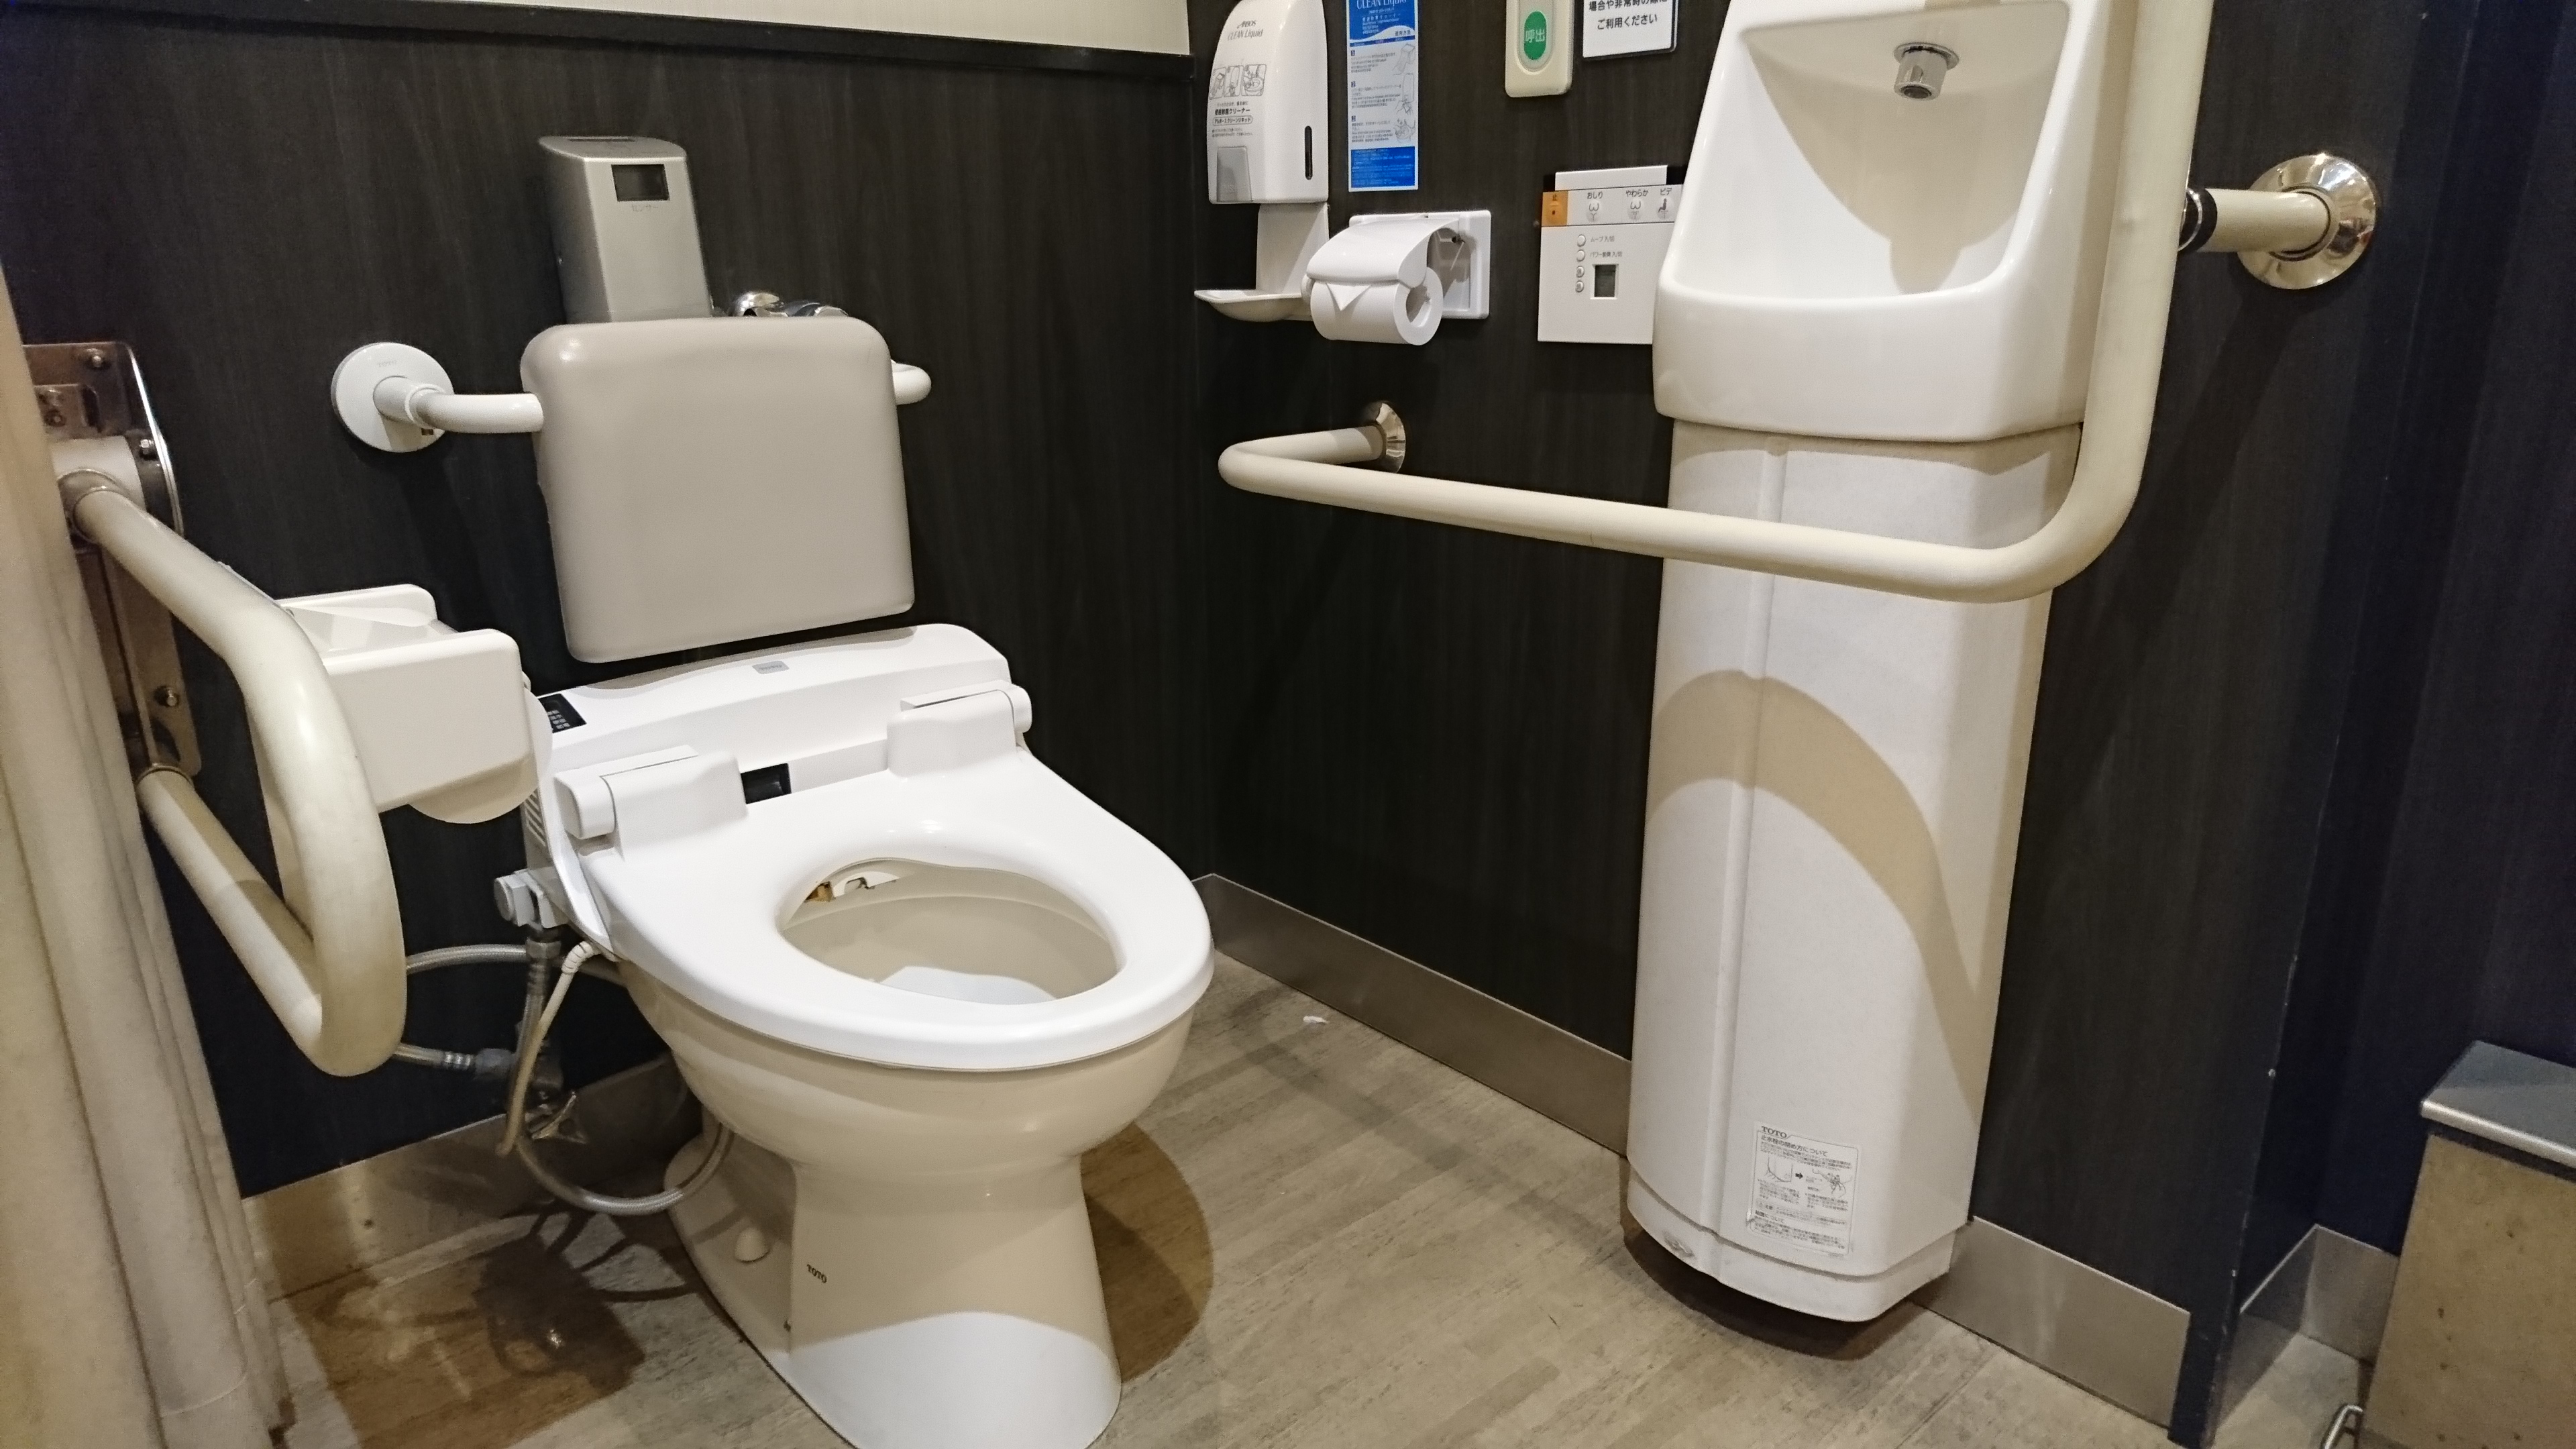 多目的トイレを施工する際にきちんと確認すべきポイント 車椅子の目線で伝えるバリアフリースタイル